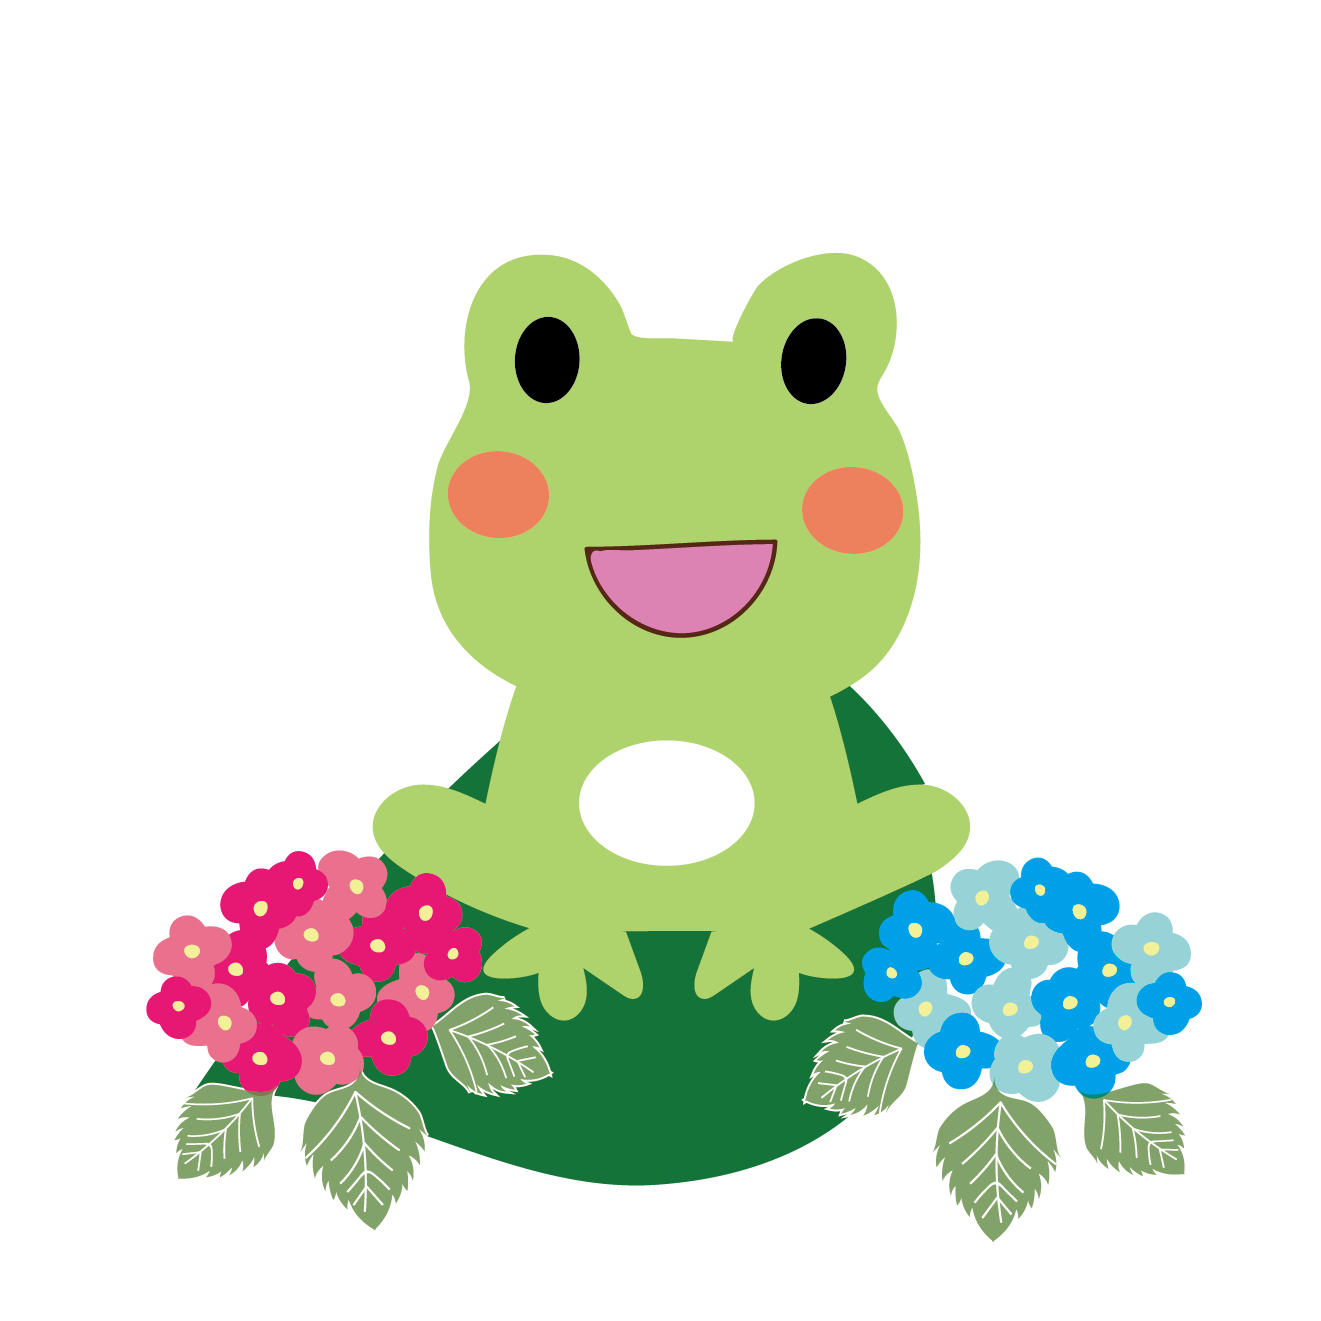 ニコニコ蛙 カエル と紫陽花のイラスト 梅雨 商用フリー 無料 のイラスト素材なら イラストマンション